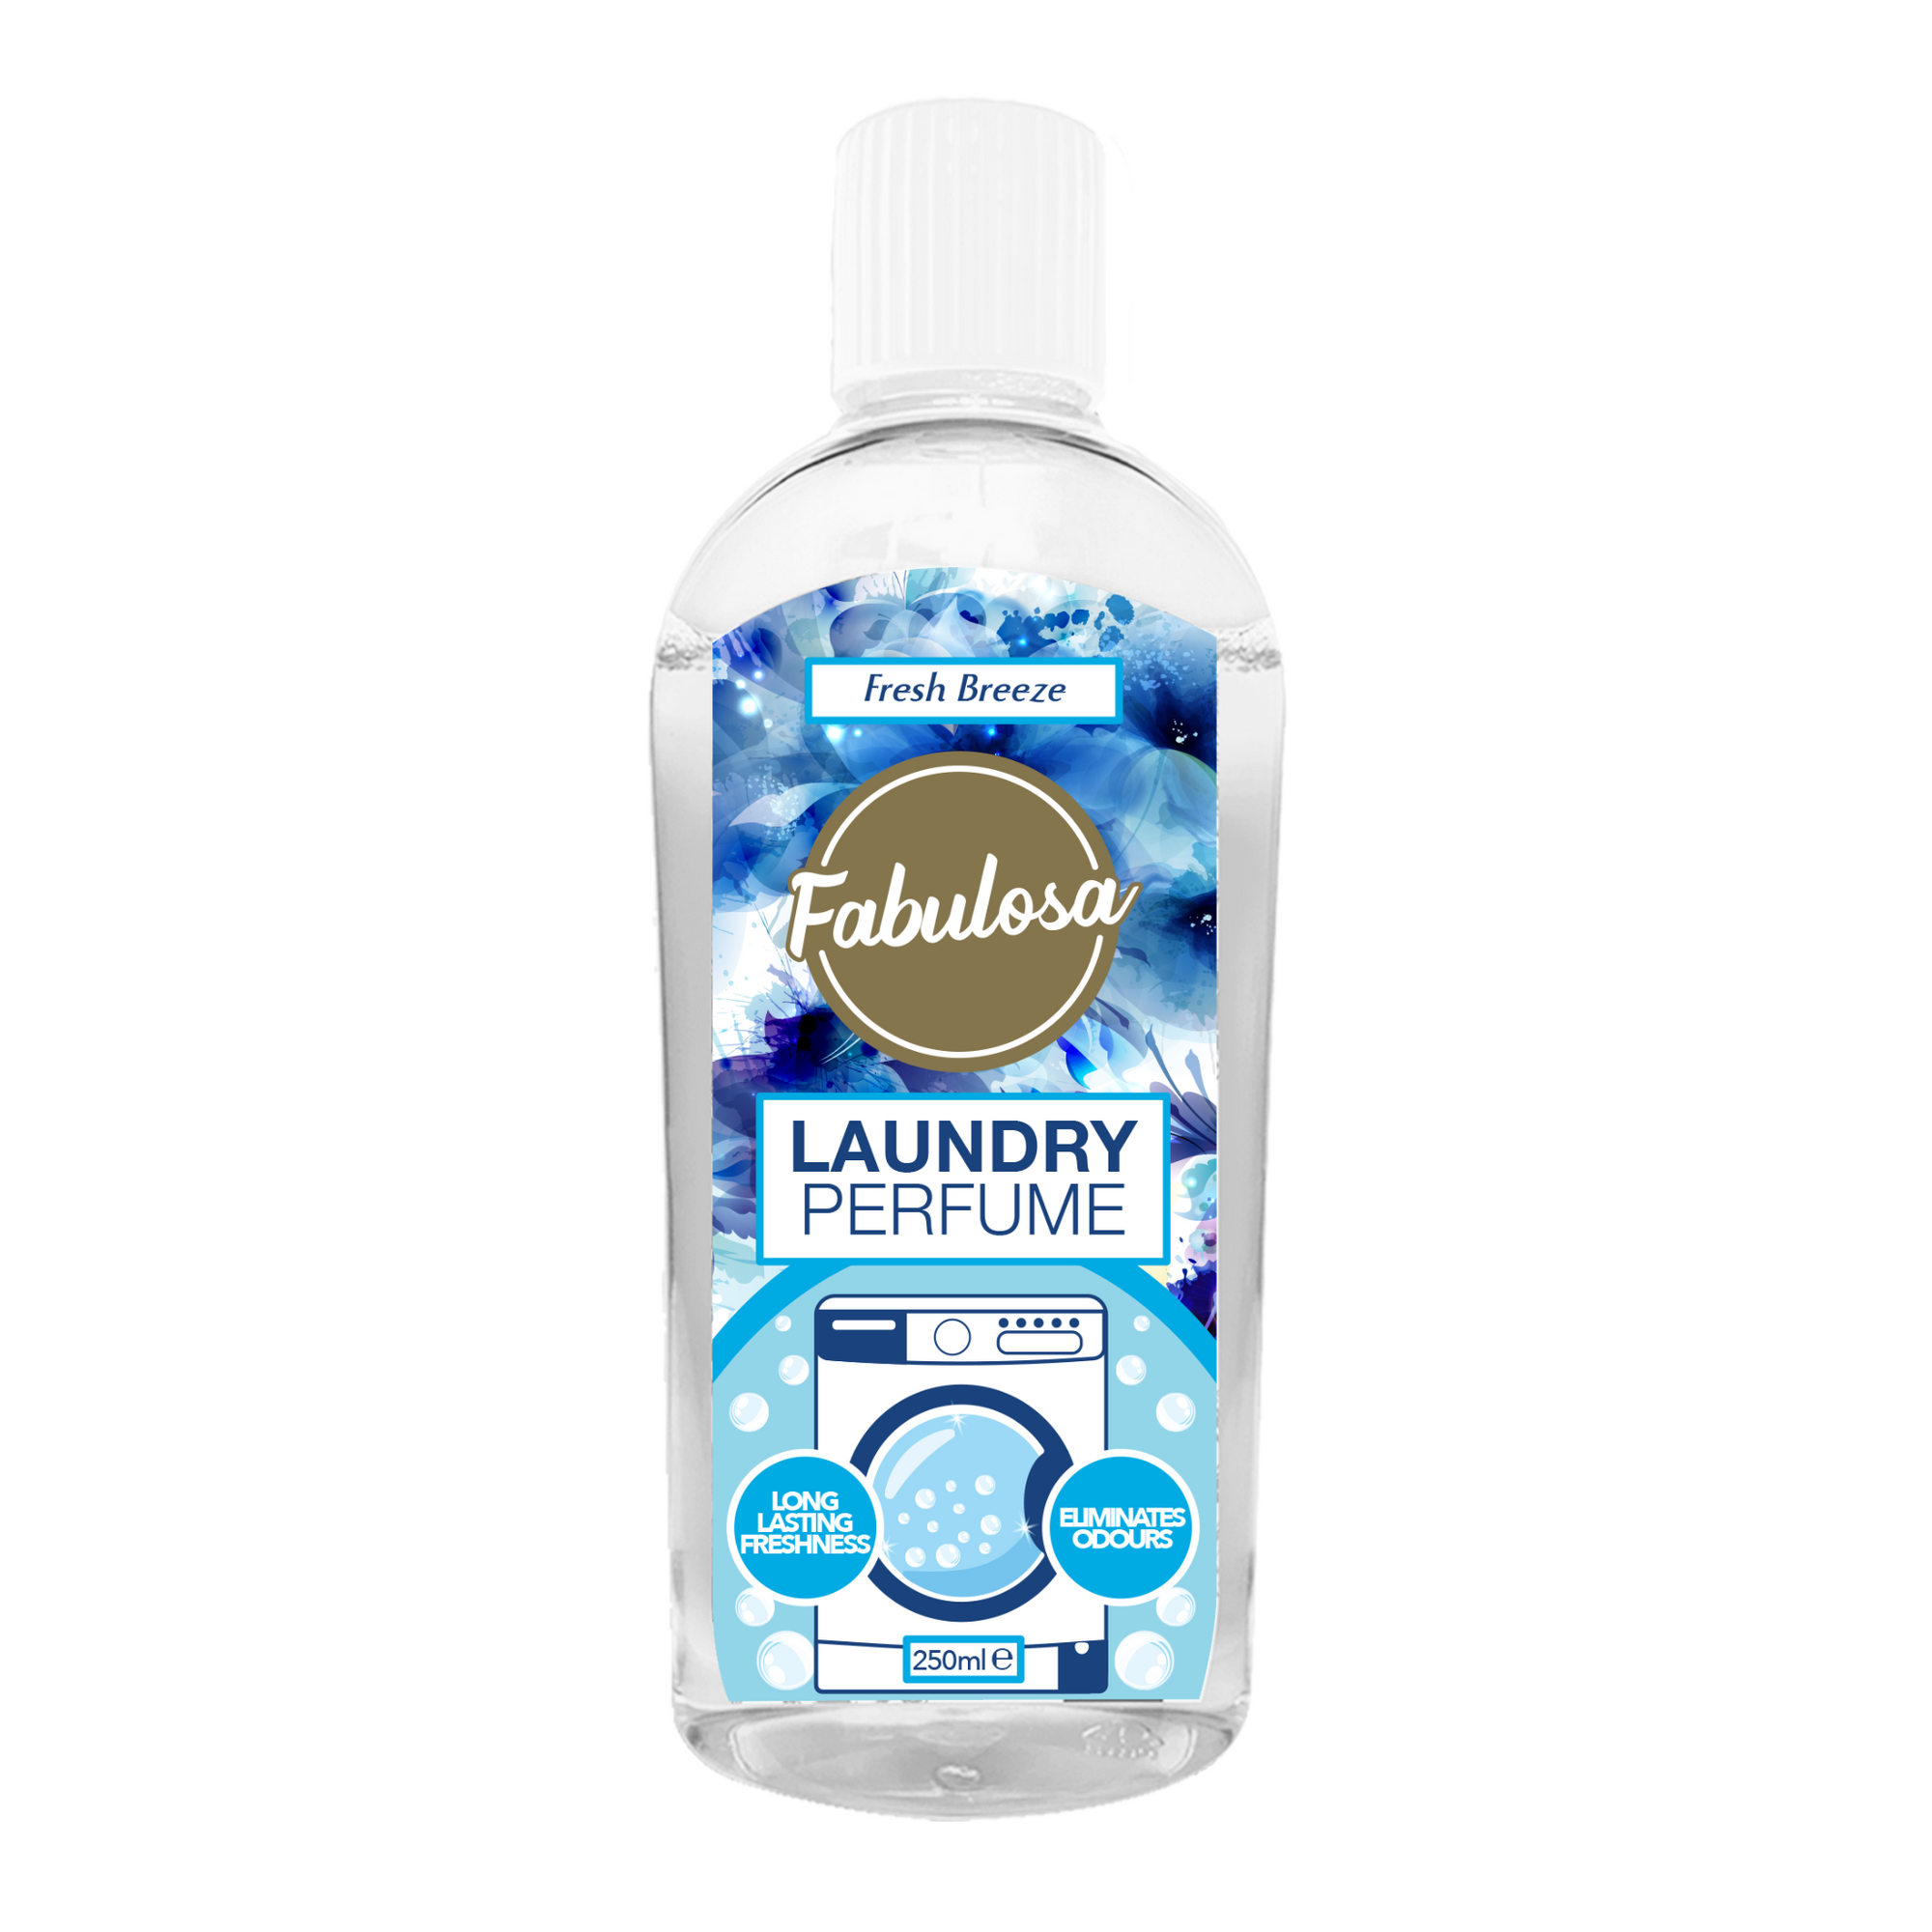 Fabulosa Laundry Perfume - Fresh Breeze (250ml)